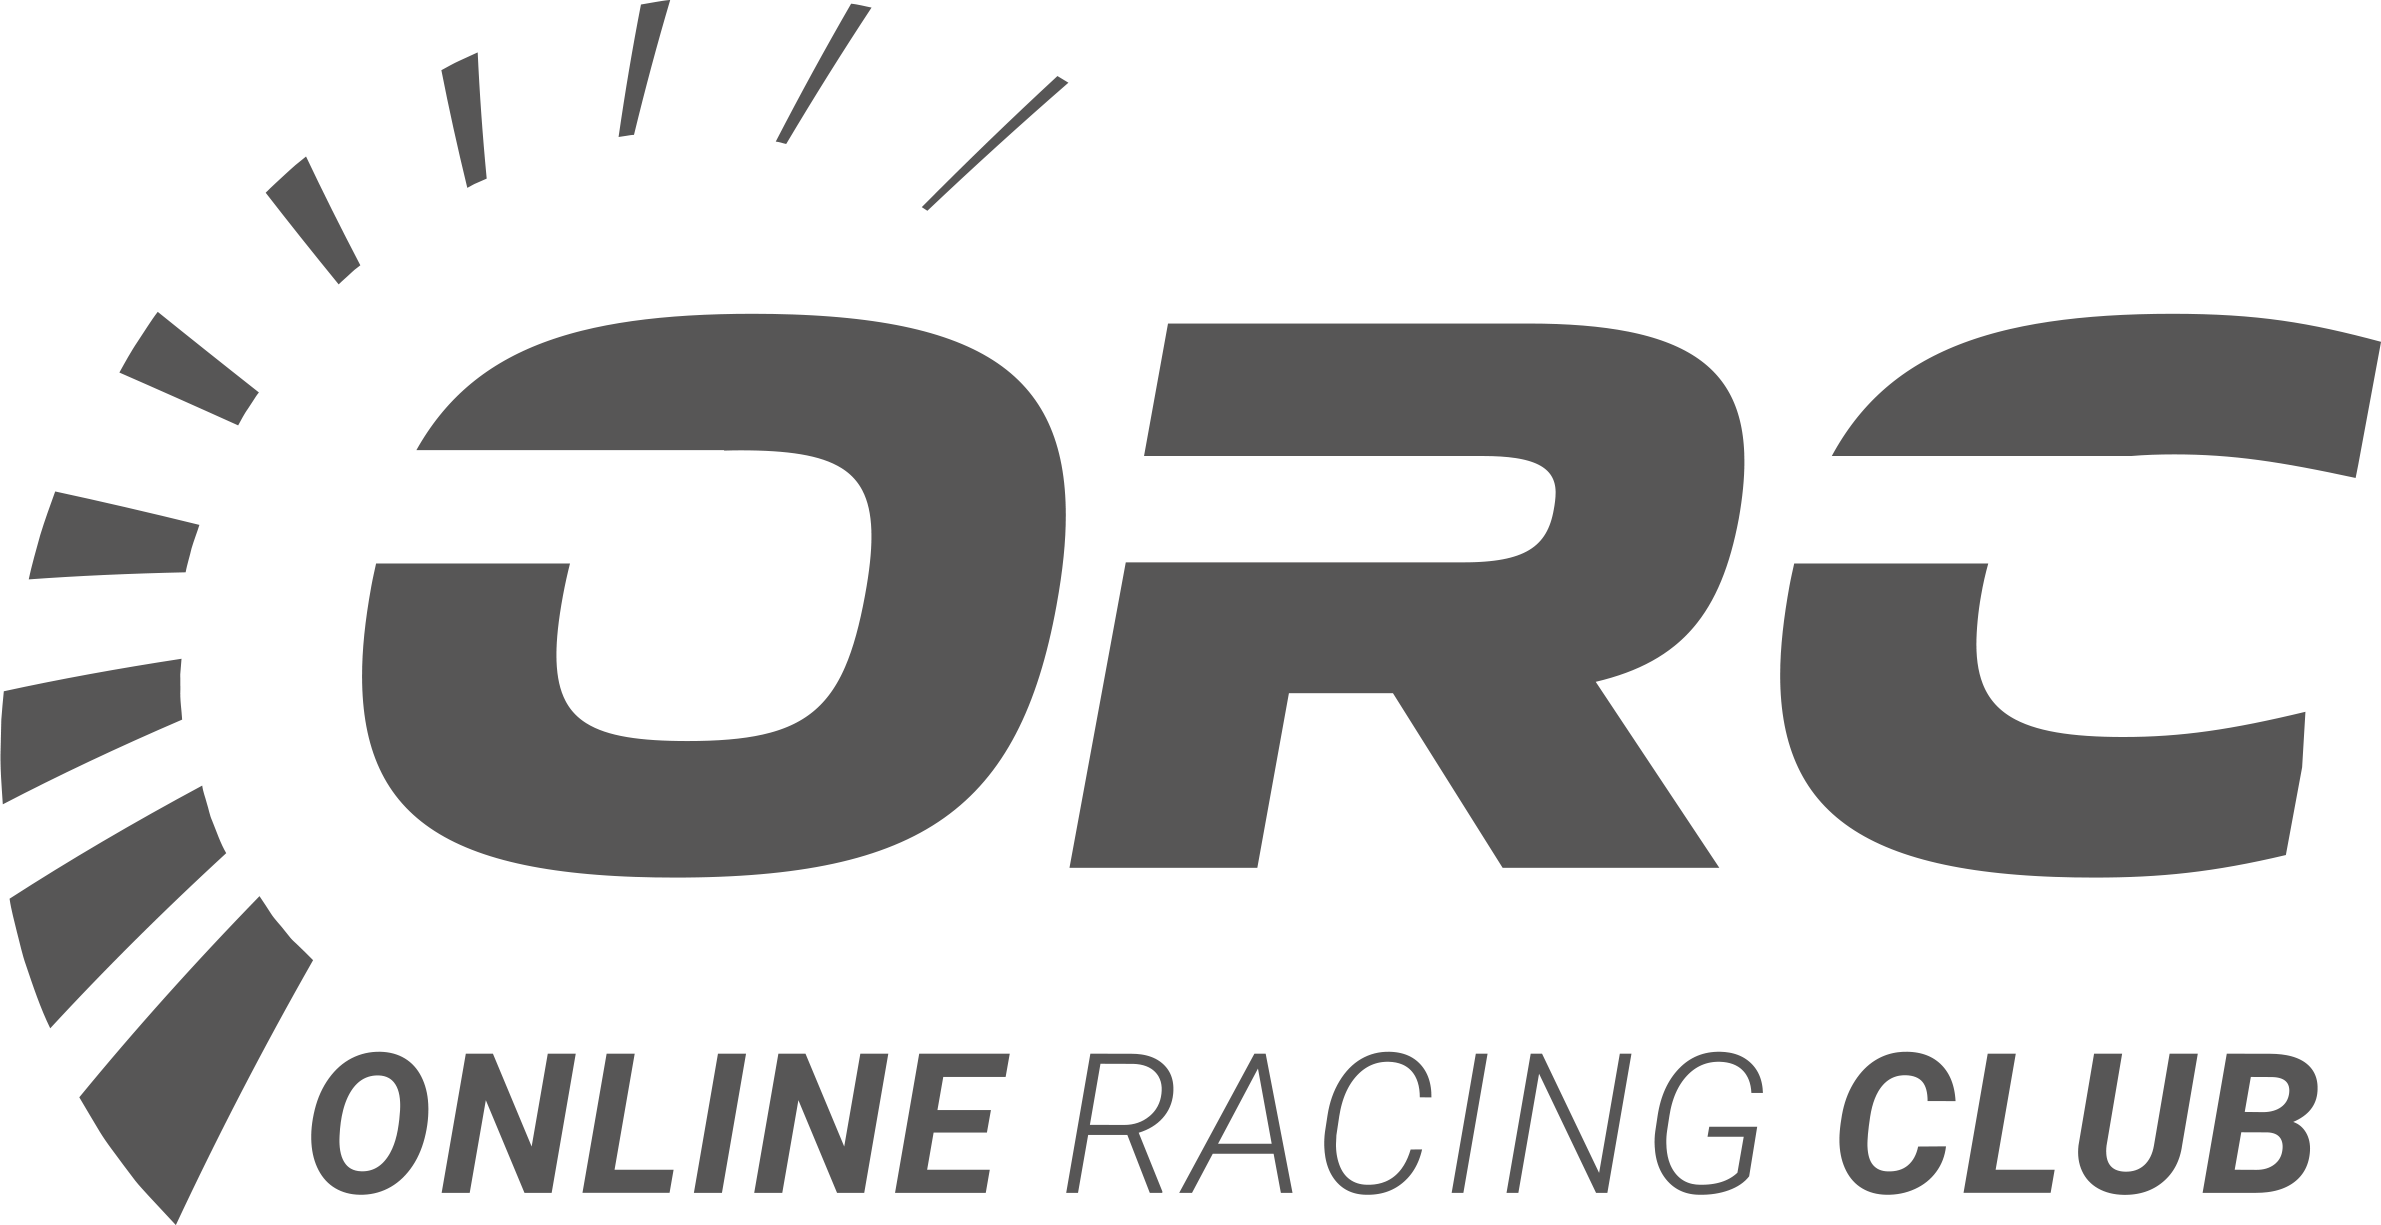 (c) Online-racing-club.de